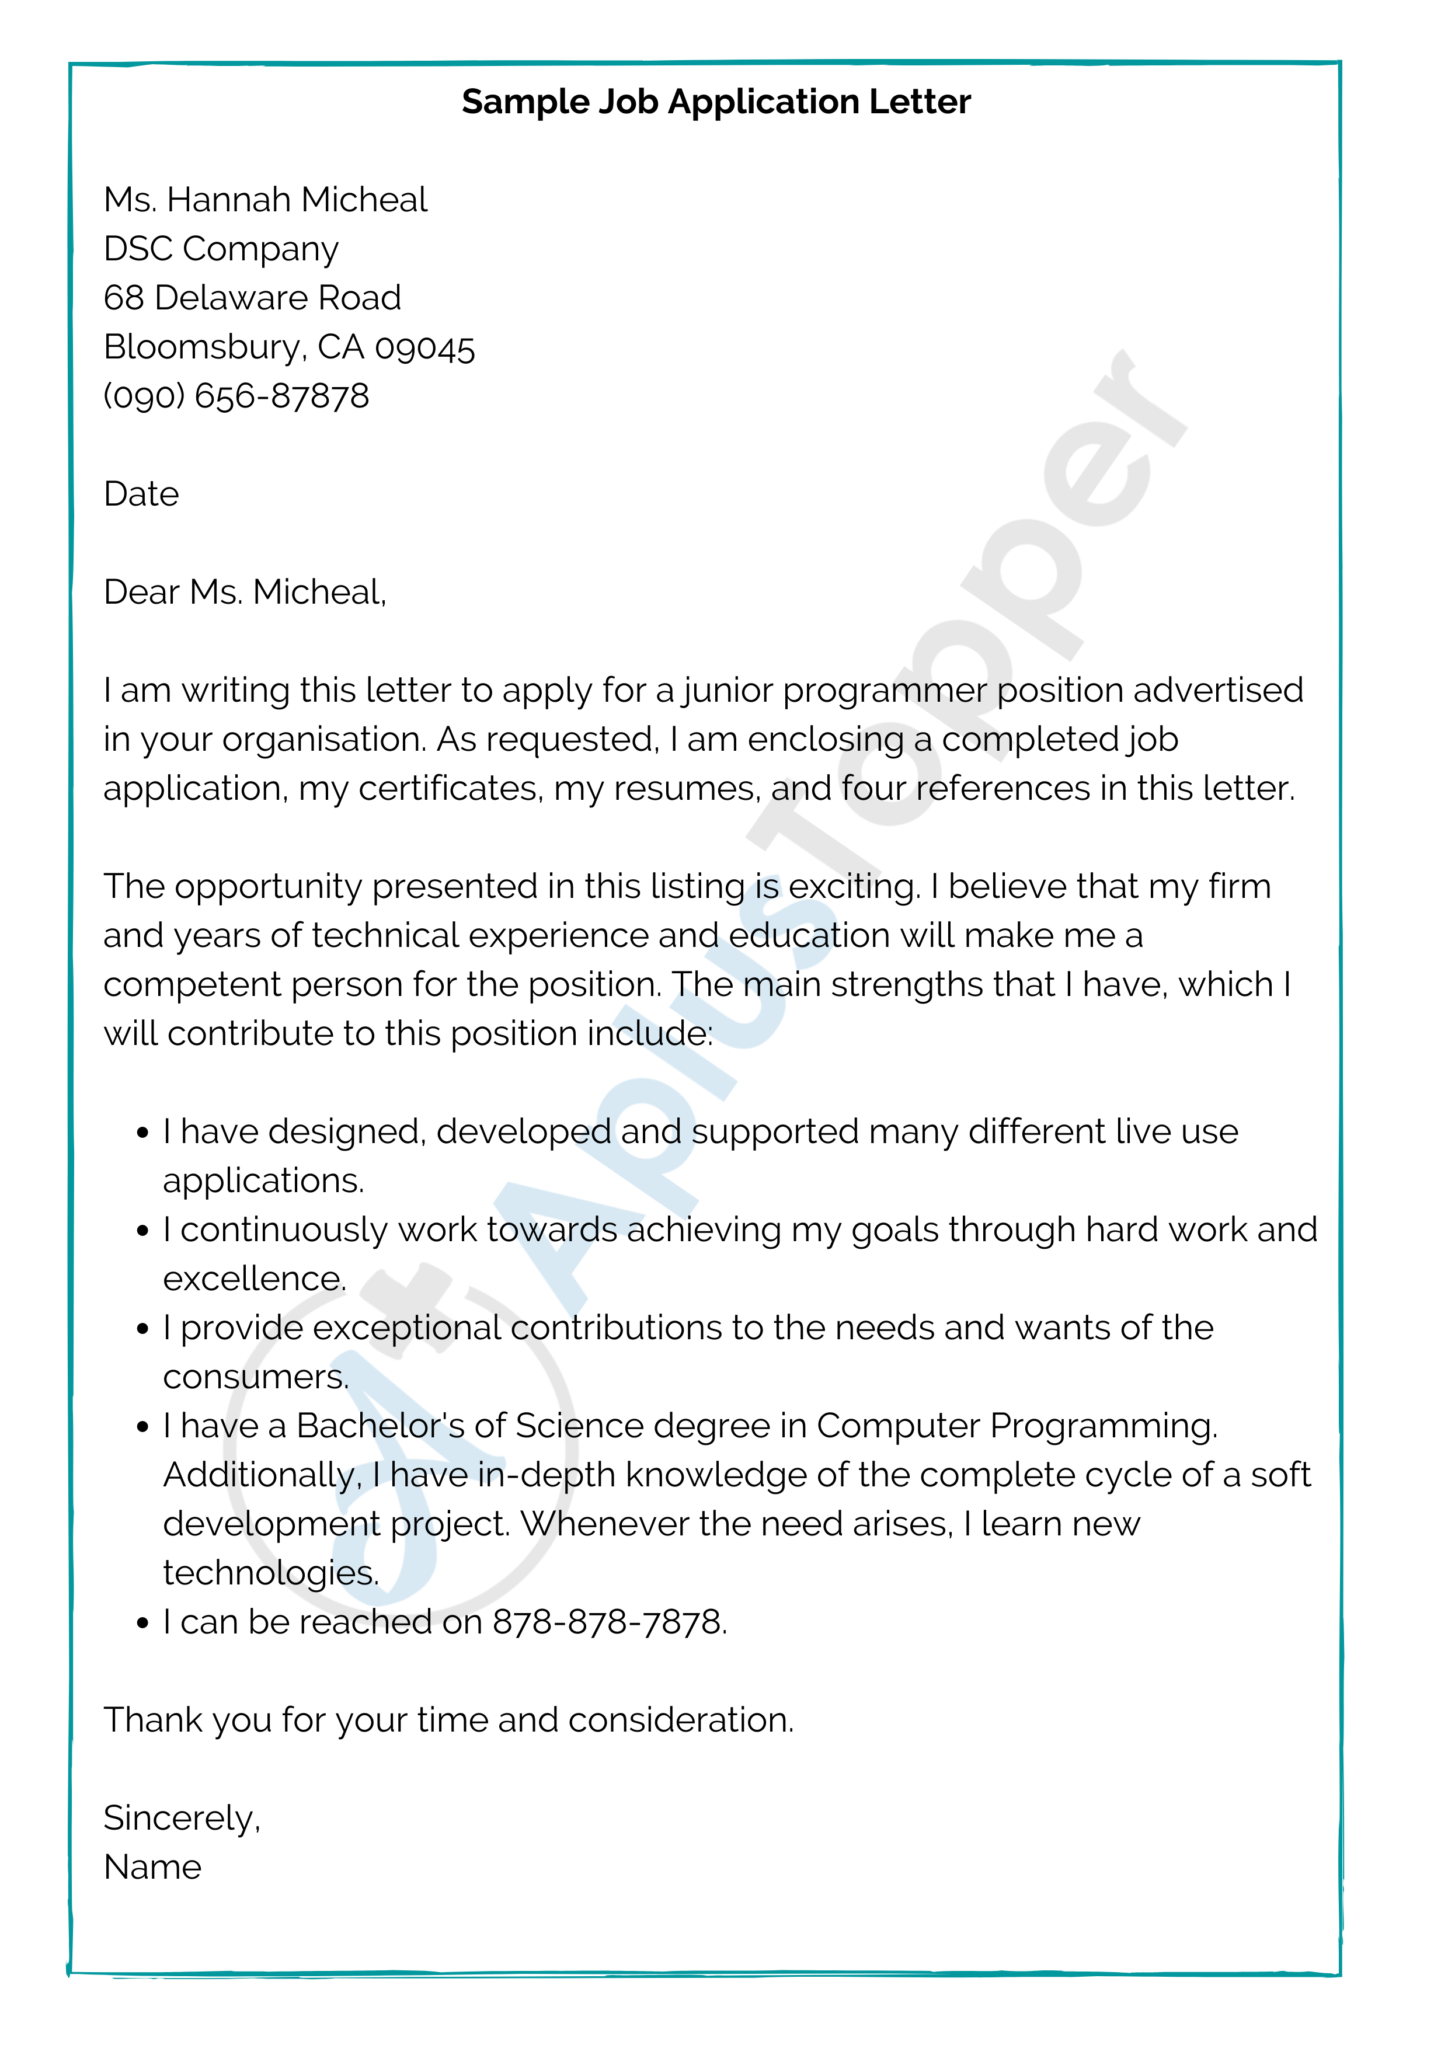 sample of written job application letter